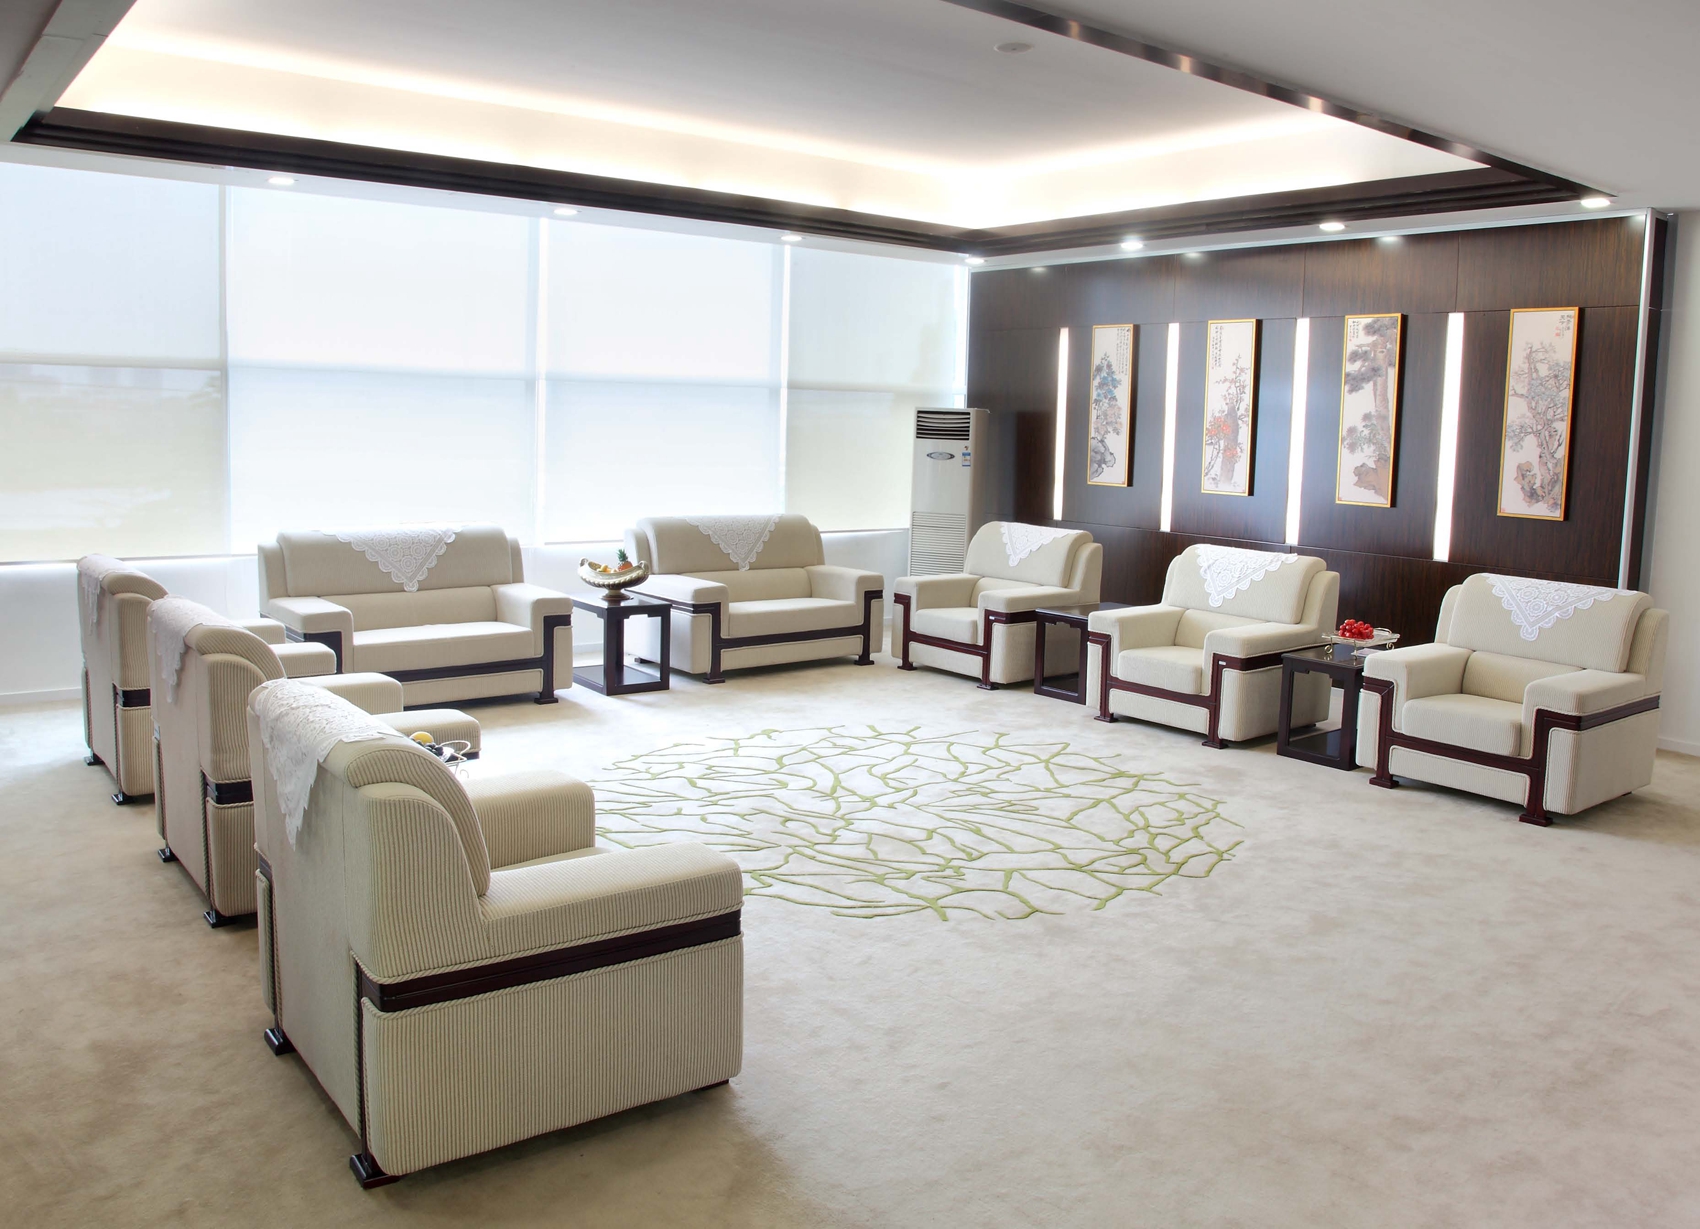 现代沙发茶几组合 - 效果图交流区-建E室内设计网